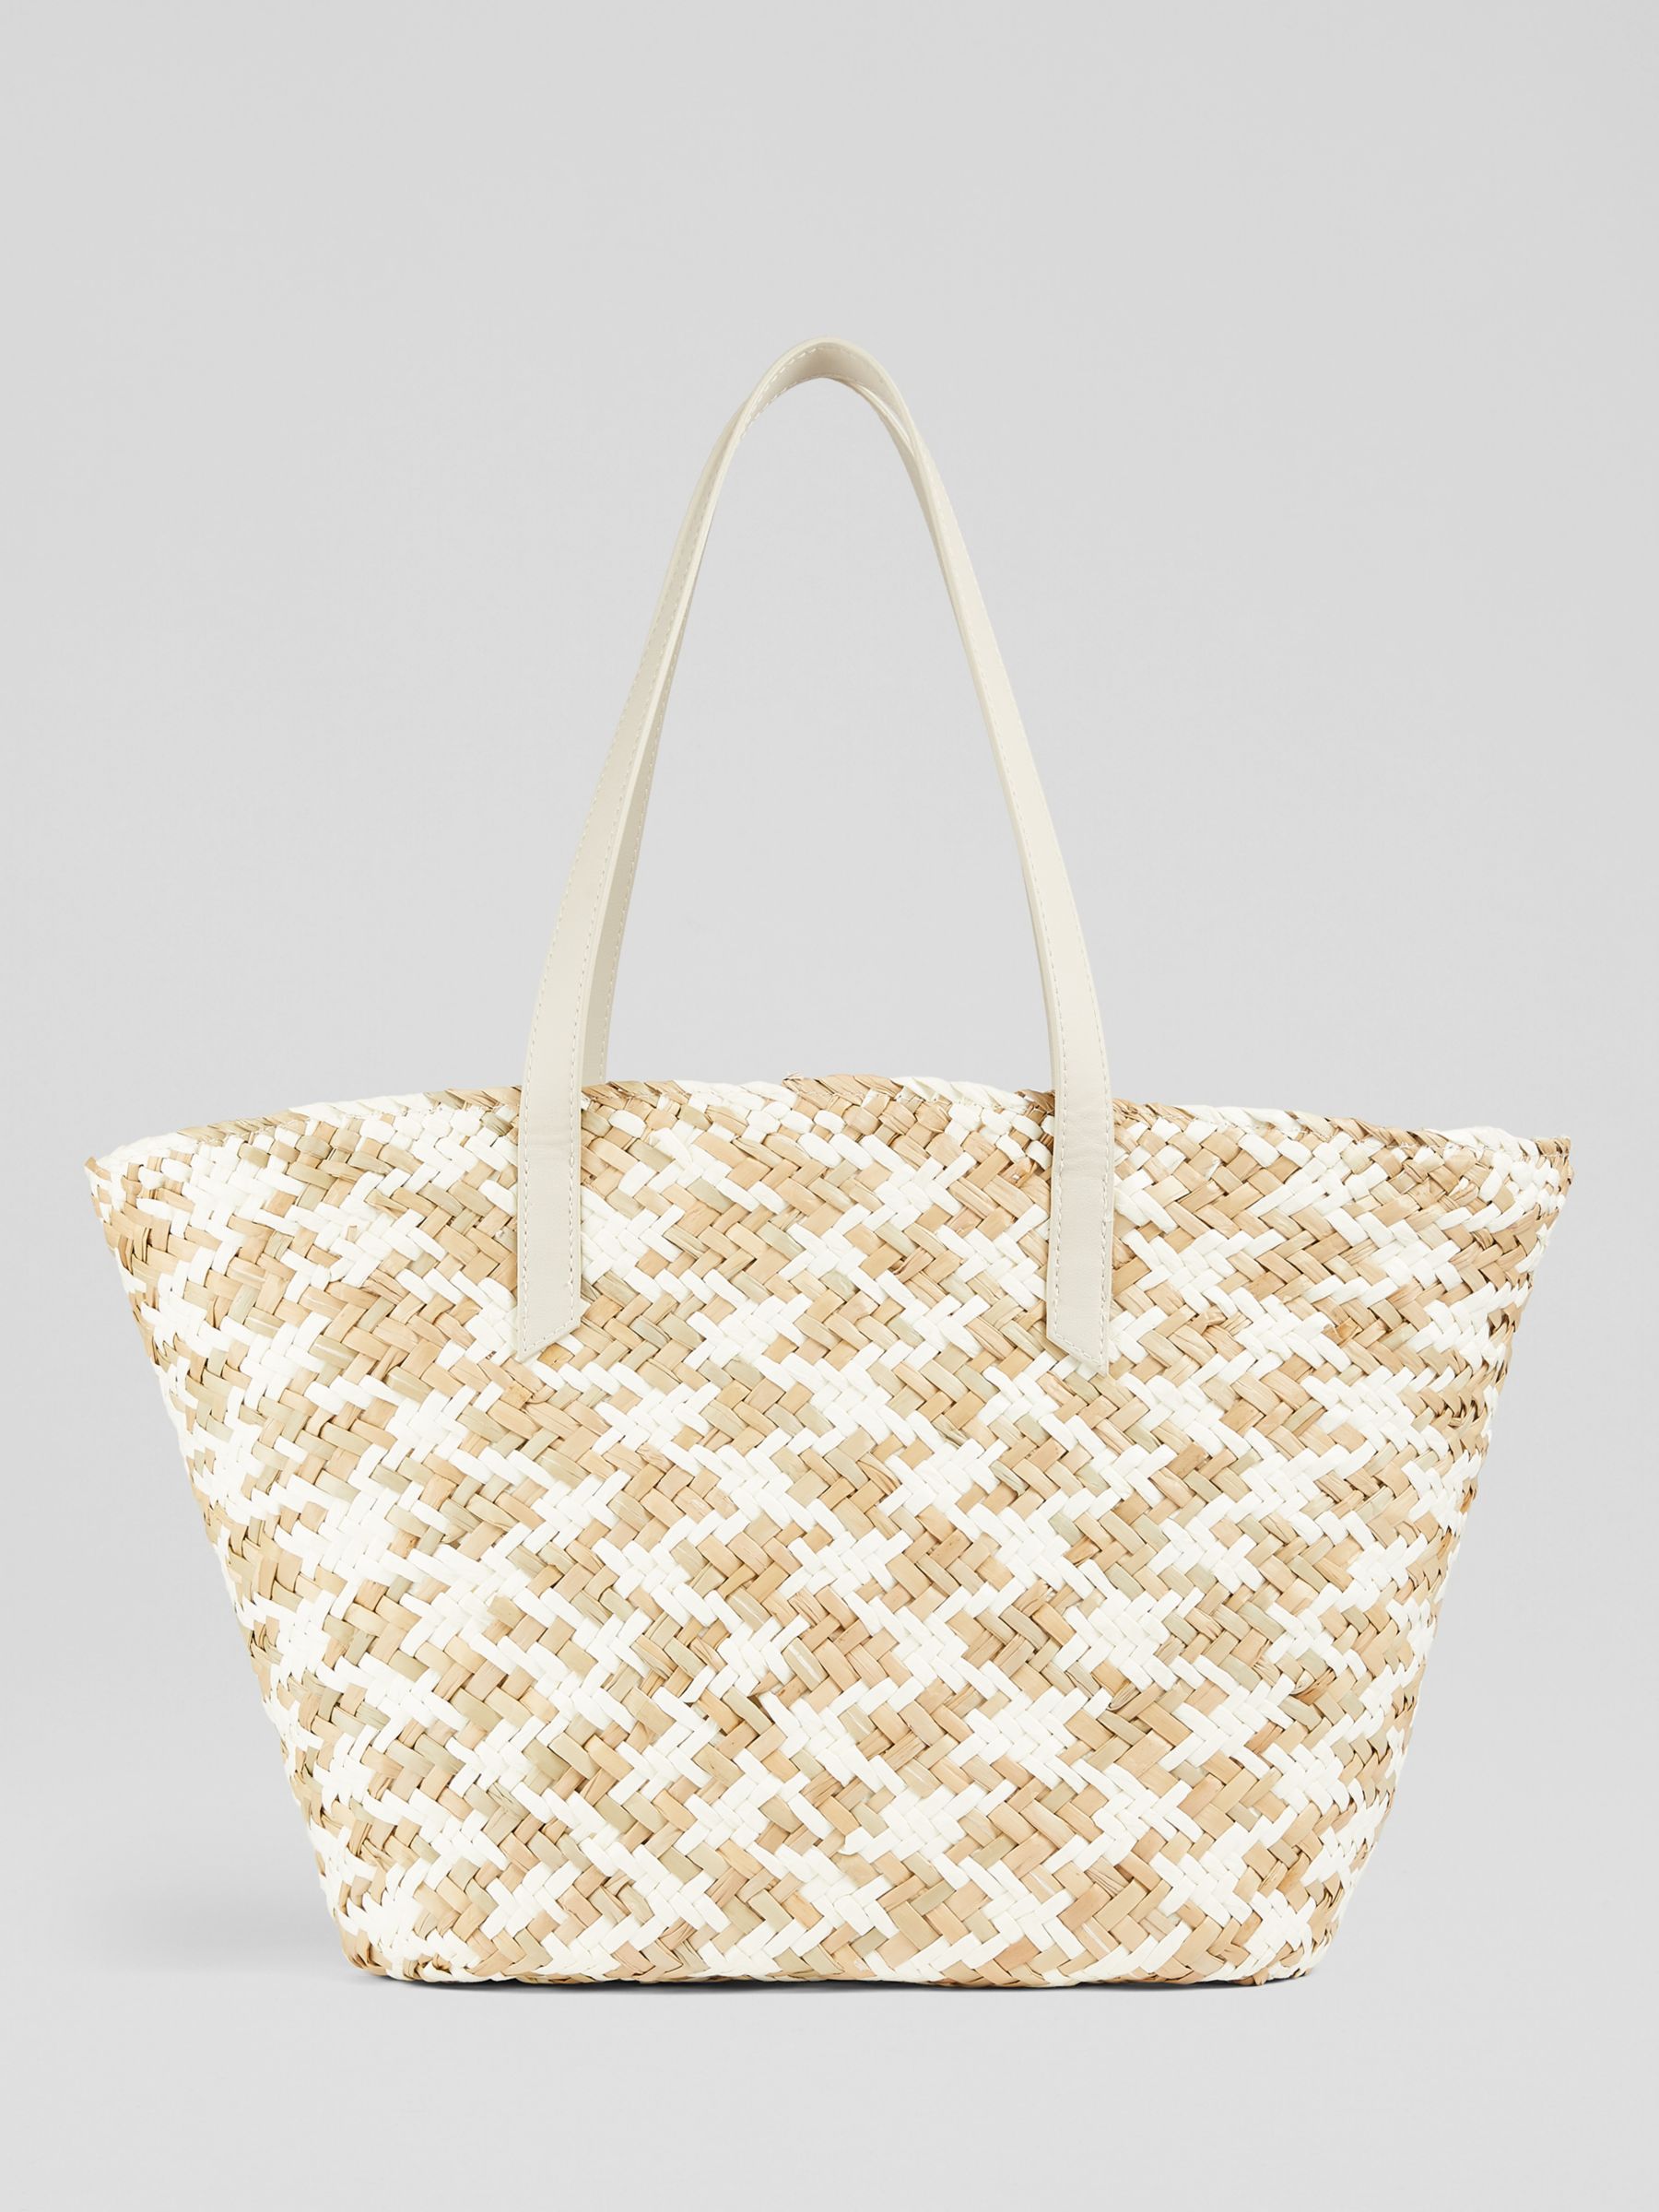 L.K.Bennett Sansa Woven Basket Bag, White/Natural, One Size